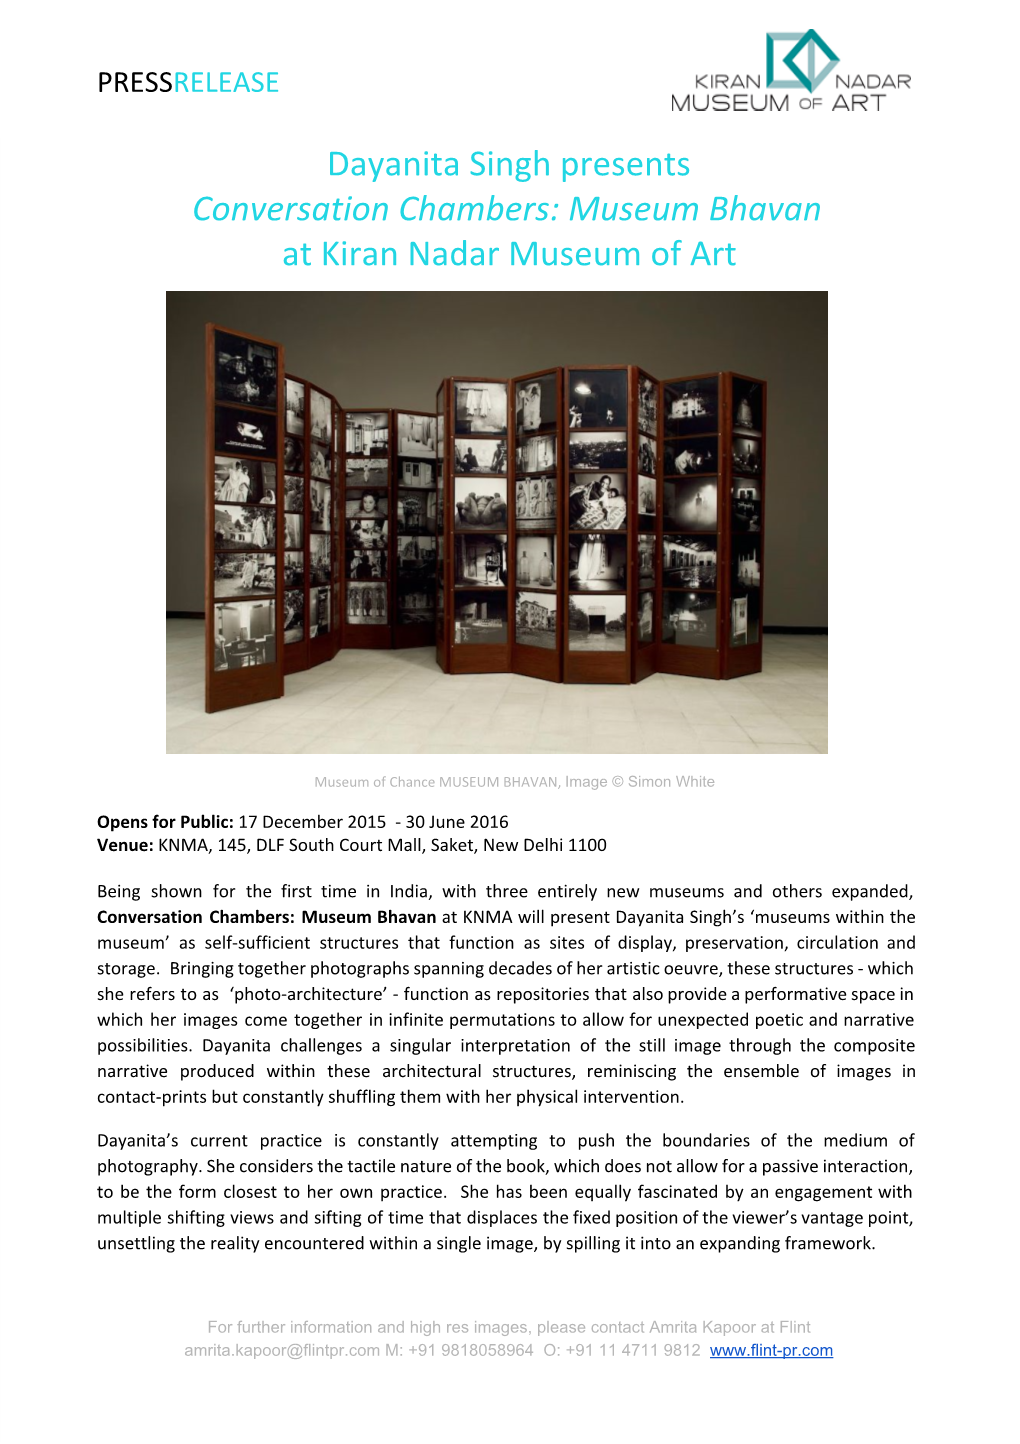 Dayanita Singh Presents Conversation Chambers: Museum Bhavan at Kiran Nadar Museum of Art